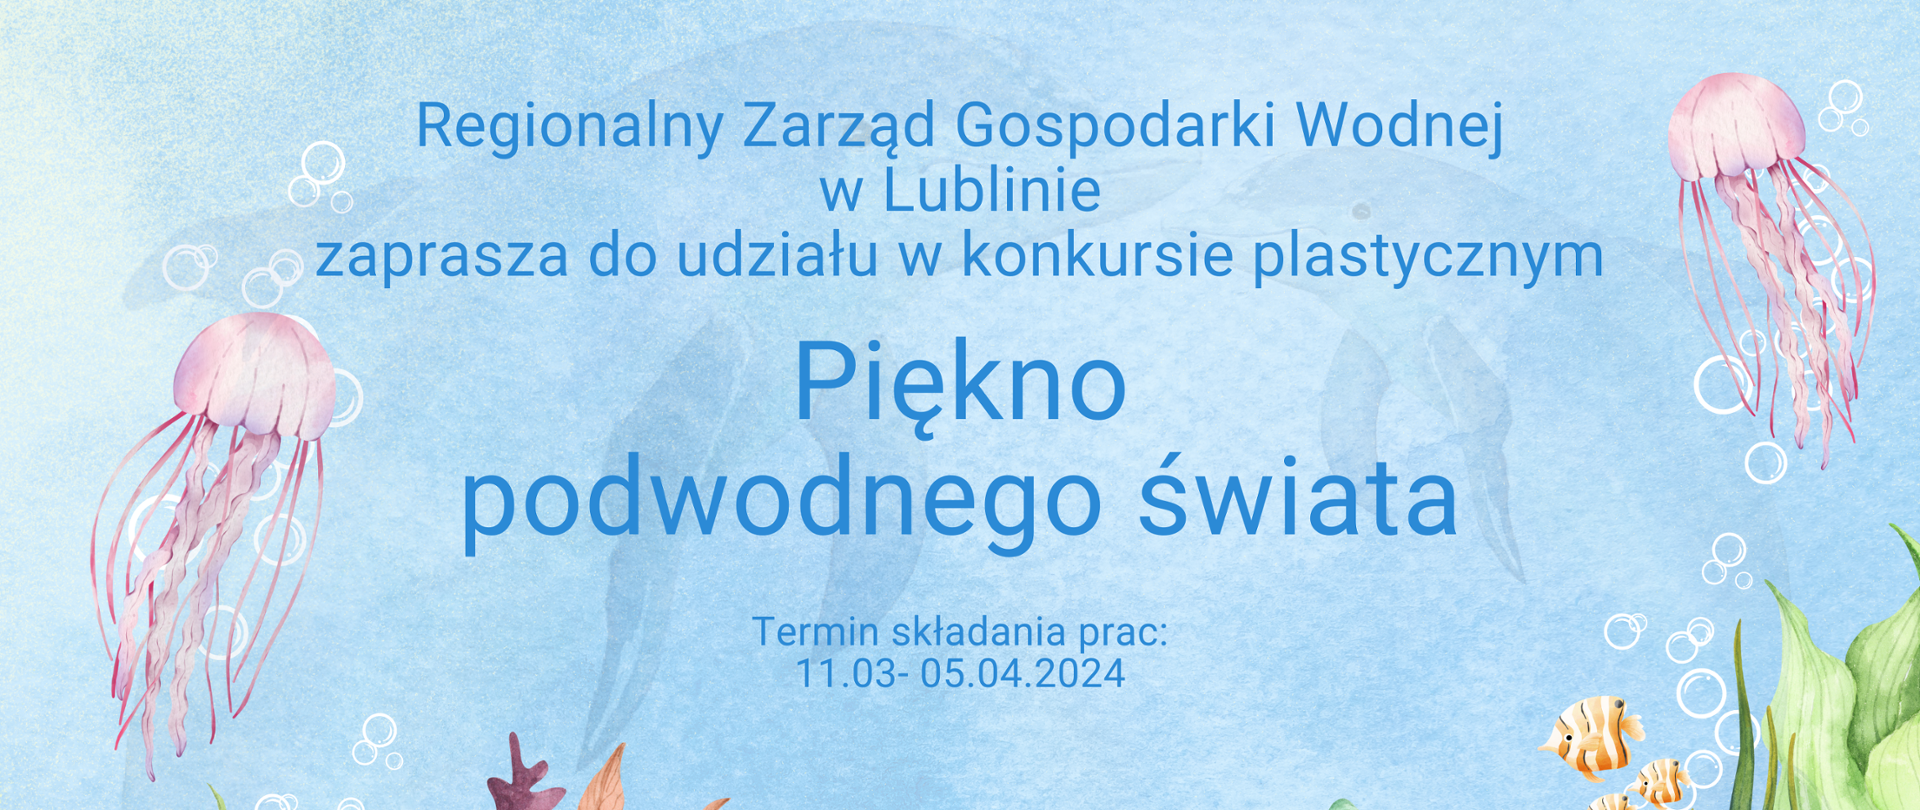 W centrum strony zaproszenie do konkursu i termin składania prac. Na dole logo PGW Wody Polskie i Aktywnych Błękitnych. Całość ozdobiona rysunkami podwodnych organizmów. 